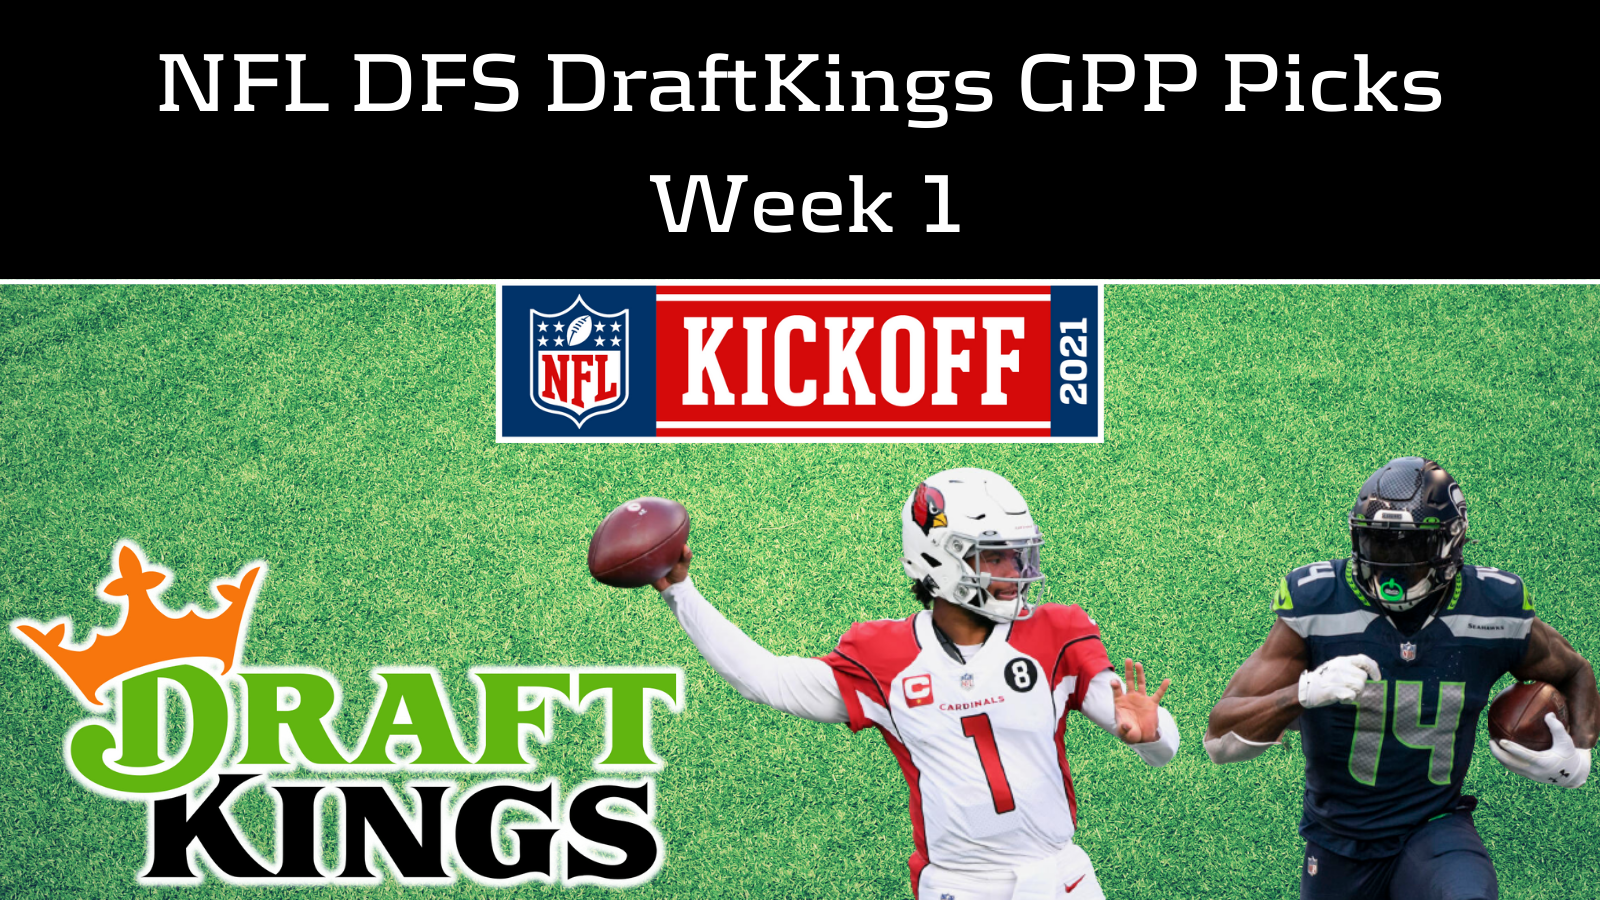 draftkings nfl picks week 1